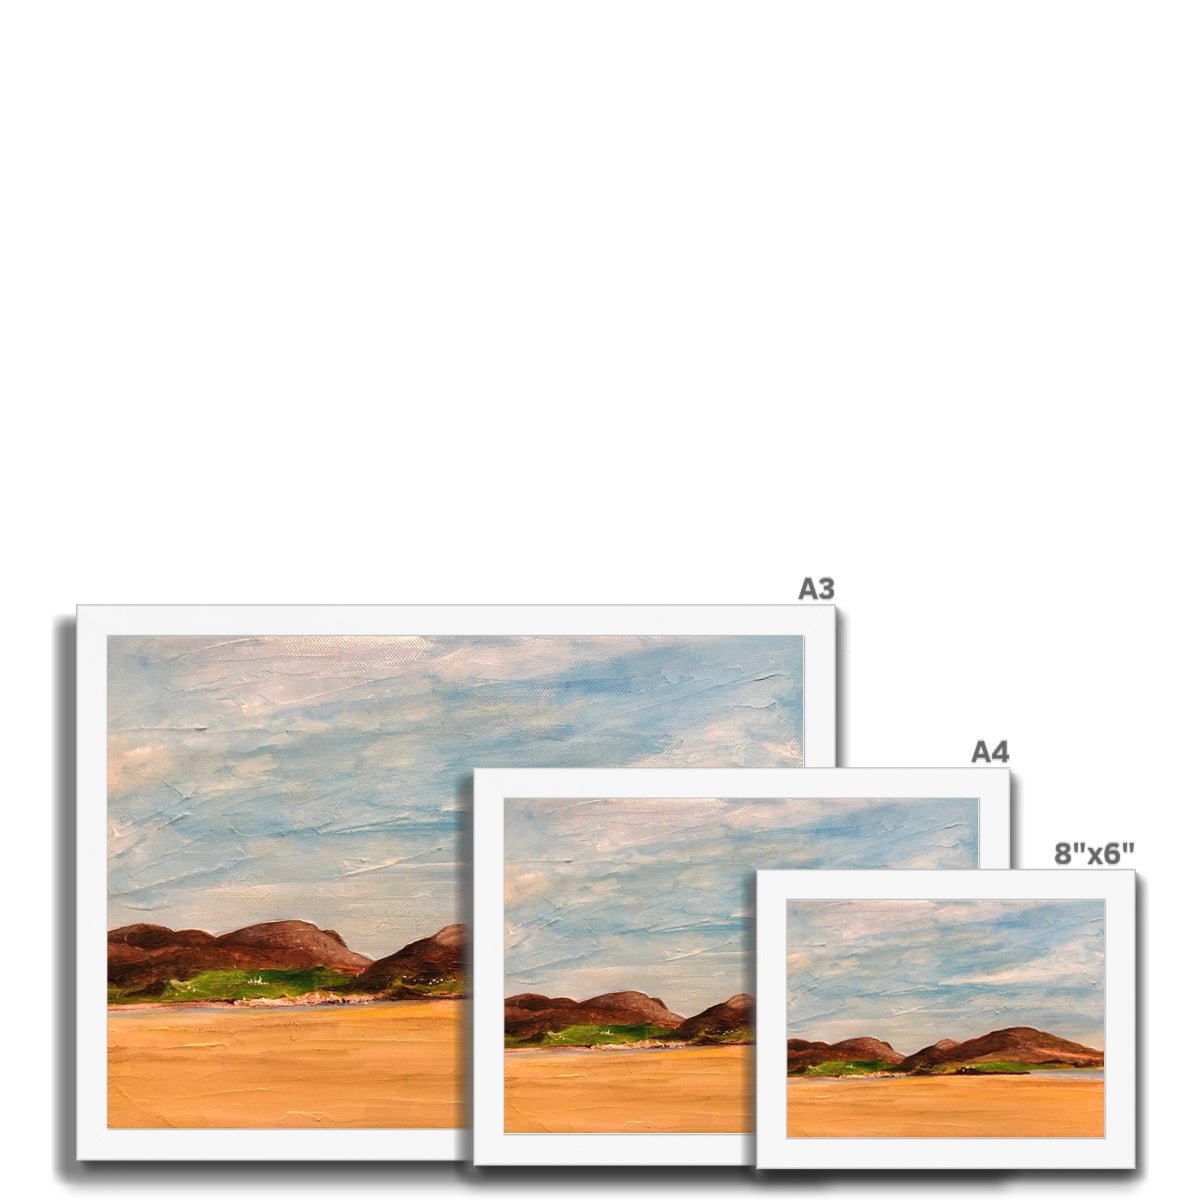 Uig Sands Lewis Painting | Framed Prints From Scotland-Framed Prints-Hebridean Islands Art Gallery-Paintings, Prints, Homeware, Art Gifts From Scotland By Scottish Artist Kevin Hunter